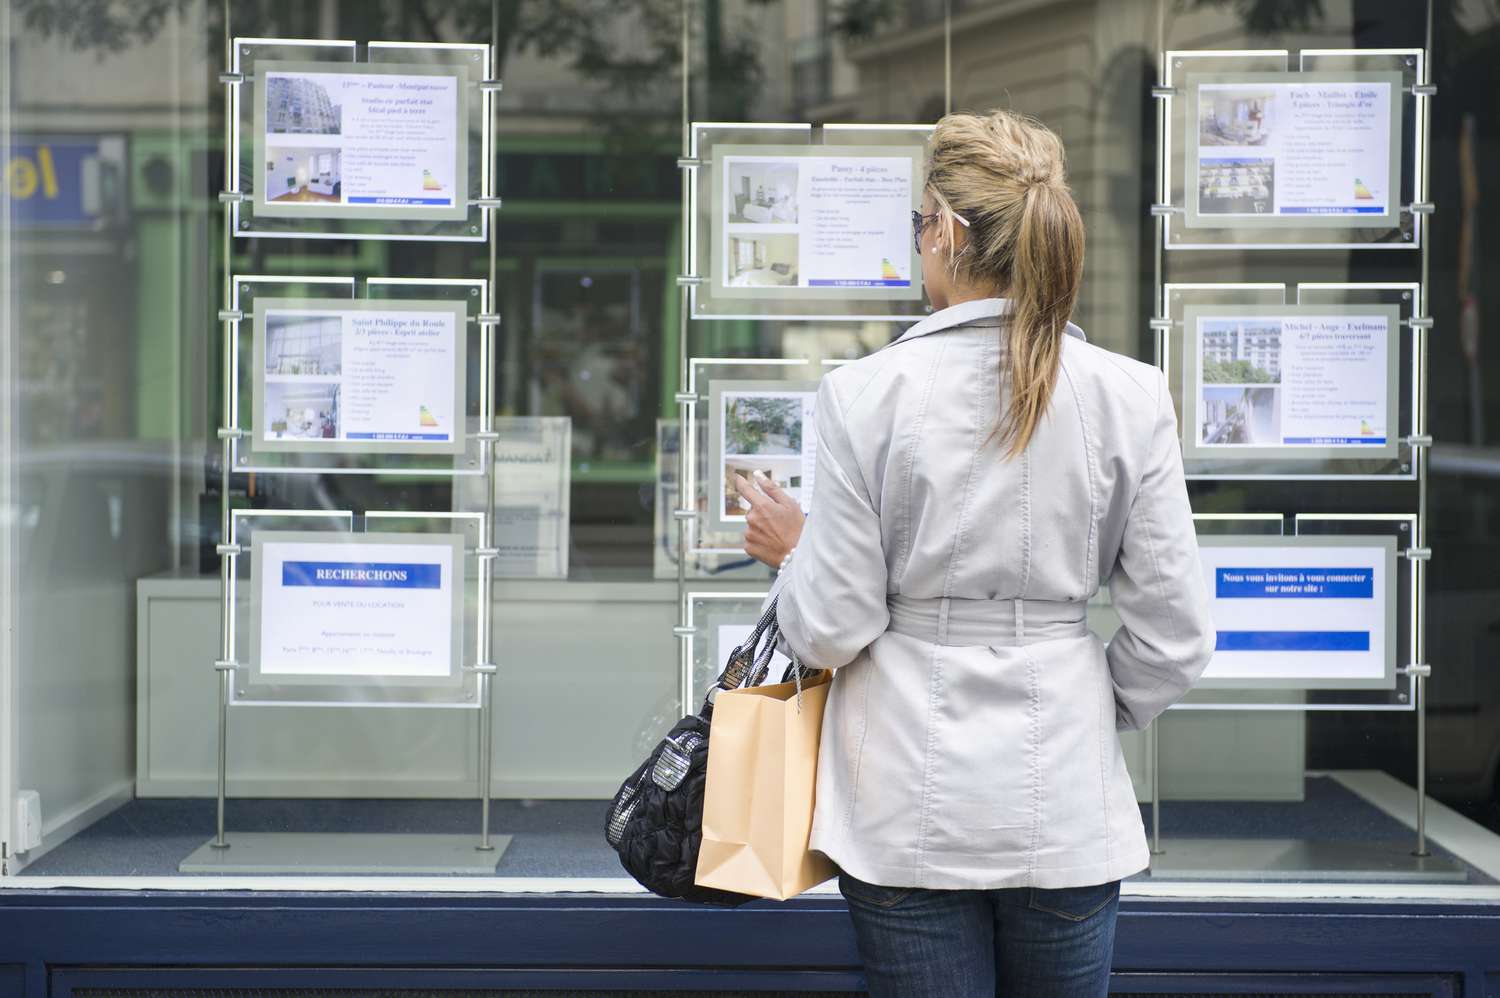 一名女子正在看房地产橱窗里的待售房屋广告